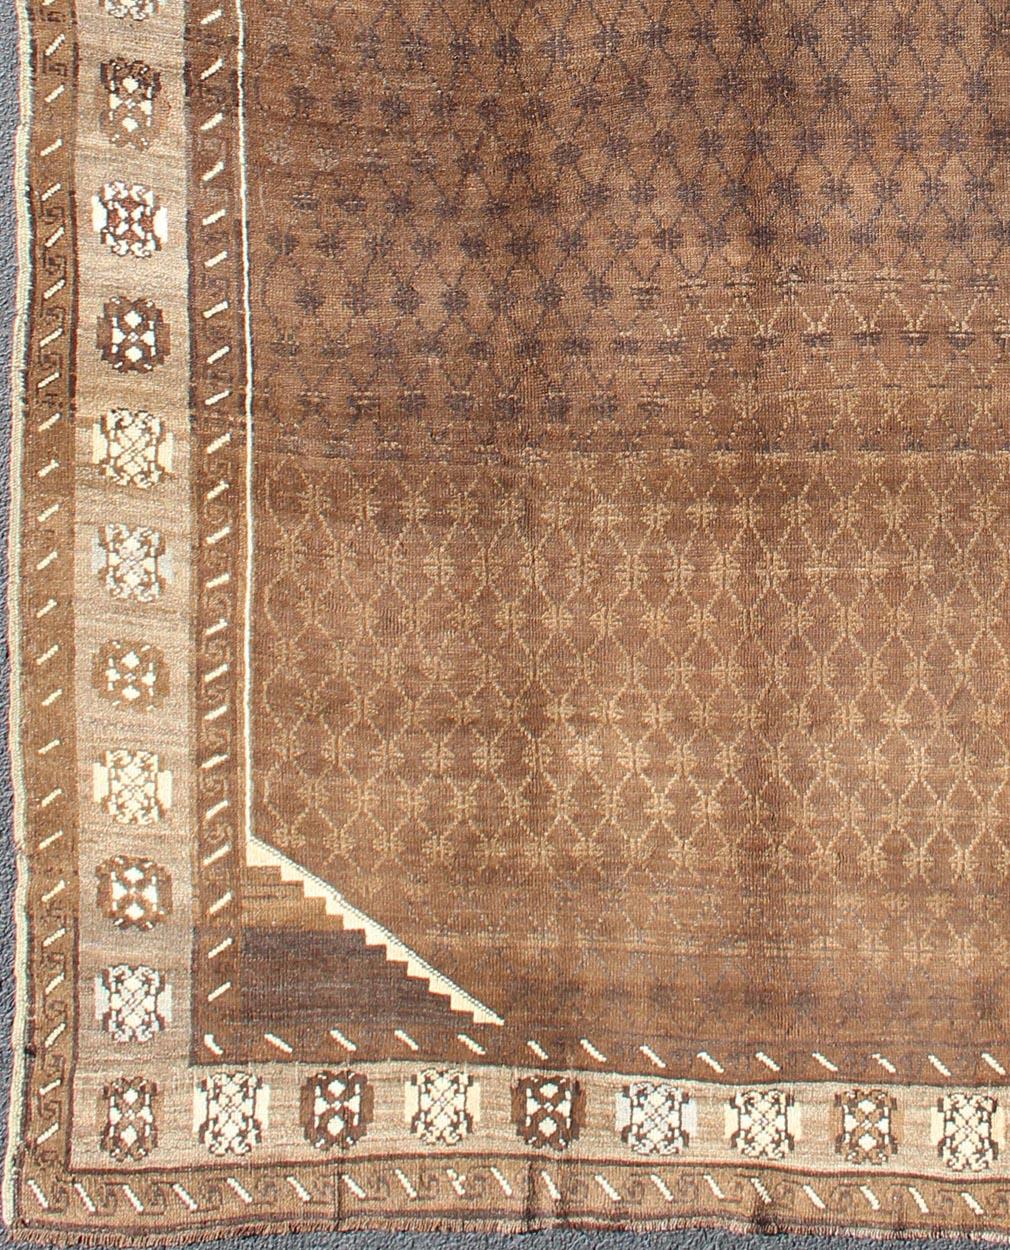 Tapis turc vintage au design moderne dans les tons bruns.
Ce saisissant tapis turc vintage, provenant des montagnes de l'est de la Turquie, présente une belle palette de base de terre de sienne chaude avec des éléments décoratifs en ivoire. Le